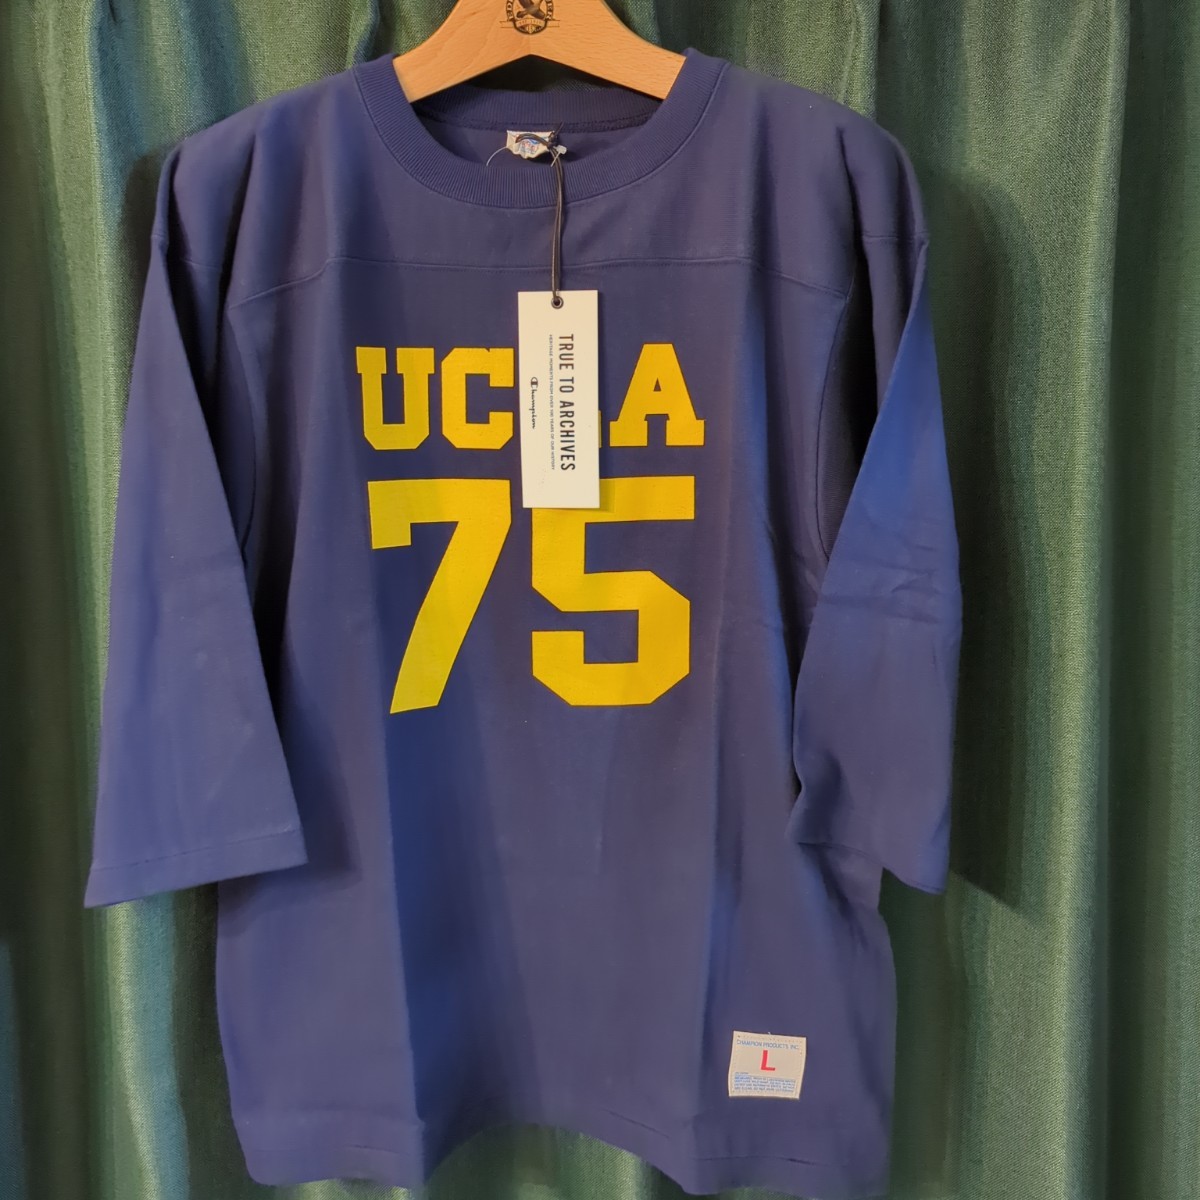 70年代 復刻 UCLA true to archives 七分 フットボール Tシャツ L 日本製 ヴィンテージ パーカー チャンピオン リバースウィーブ yale